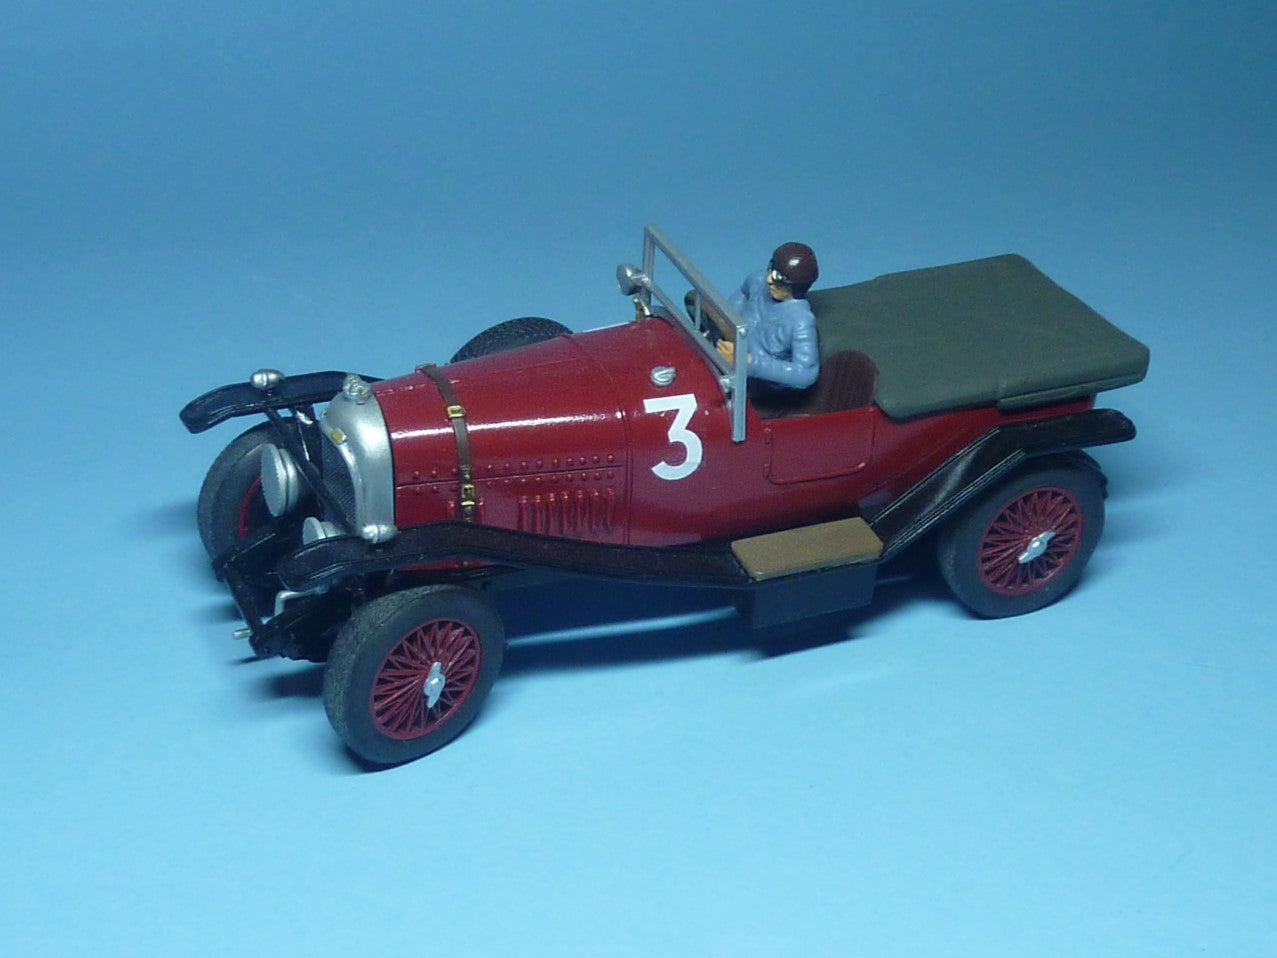 ベントレー 3L スポーツ 1924 スピード 6 トゥルノー付き (GT-433) 